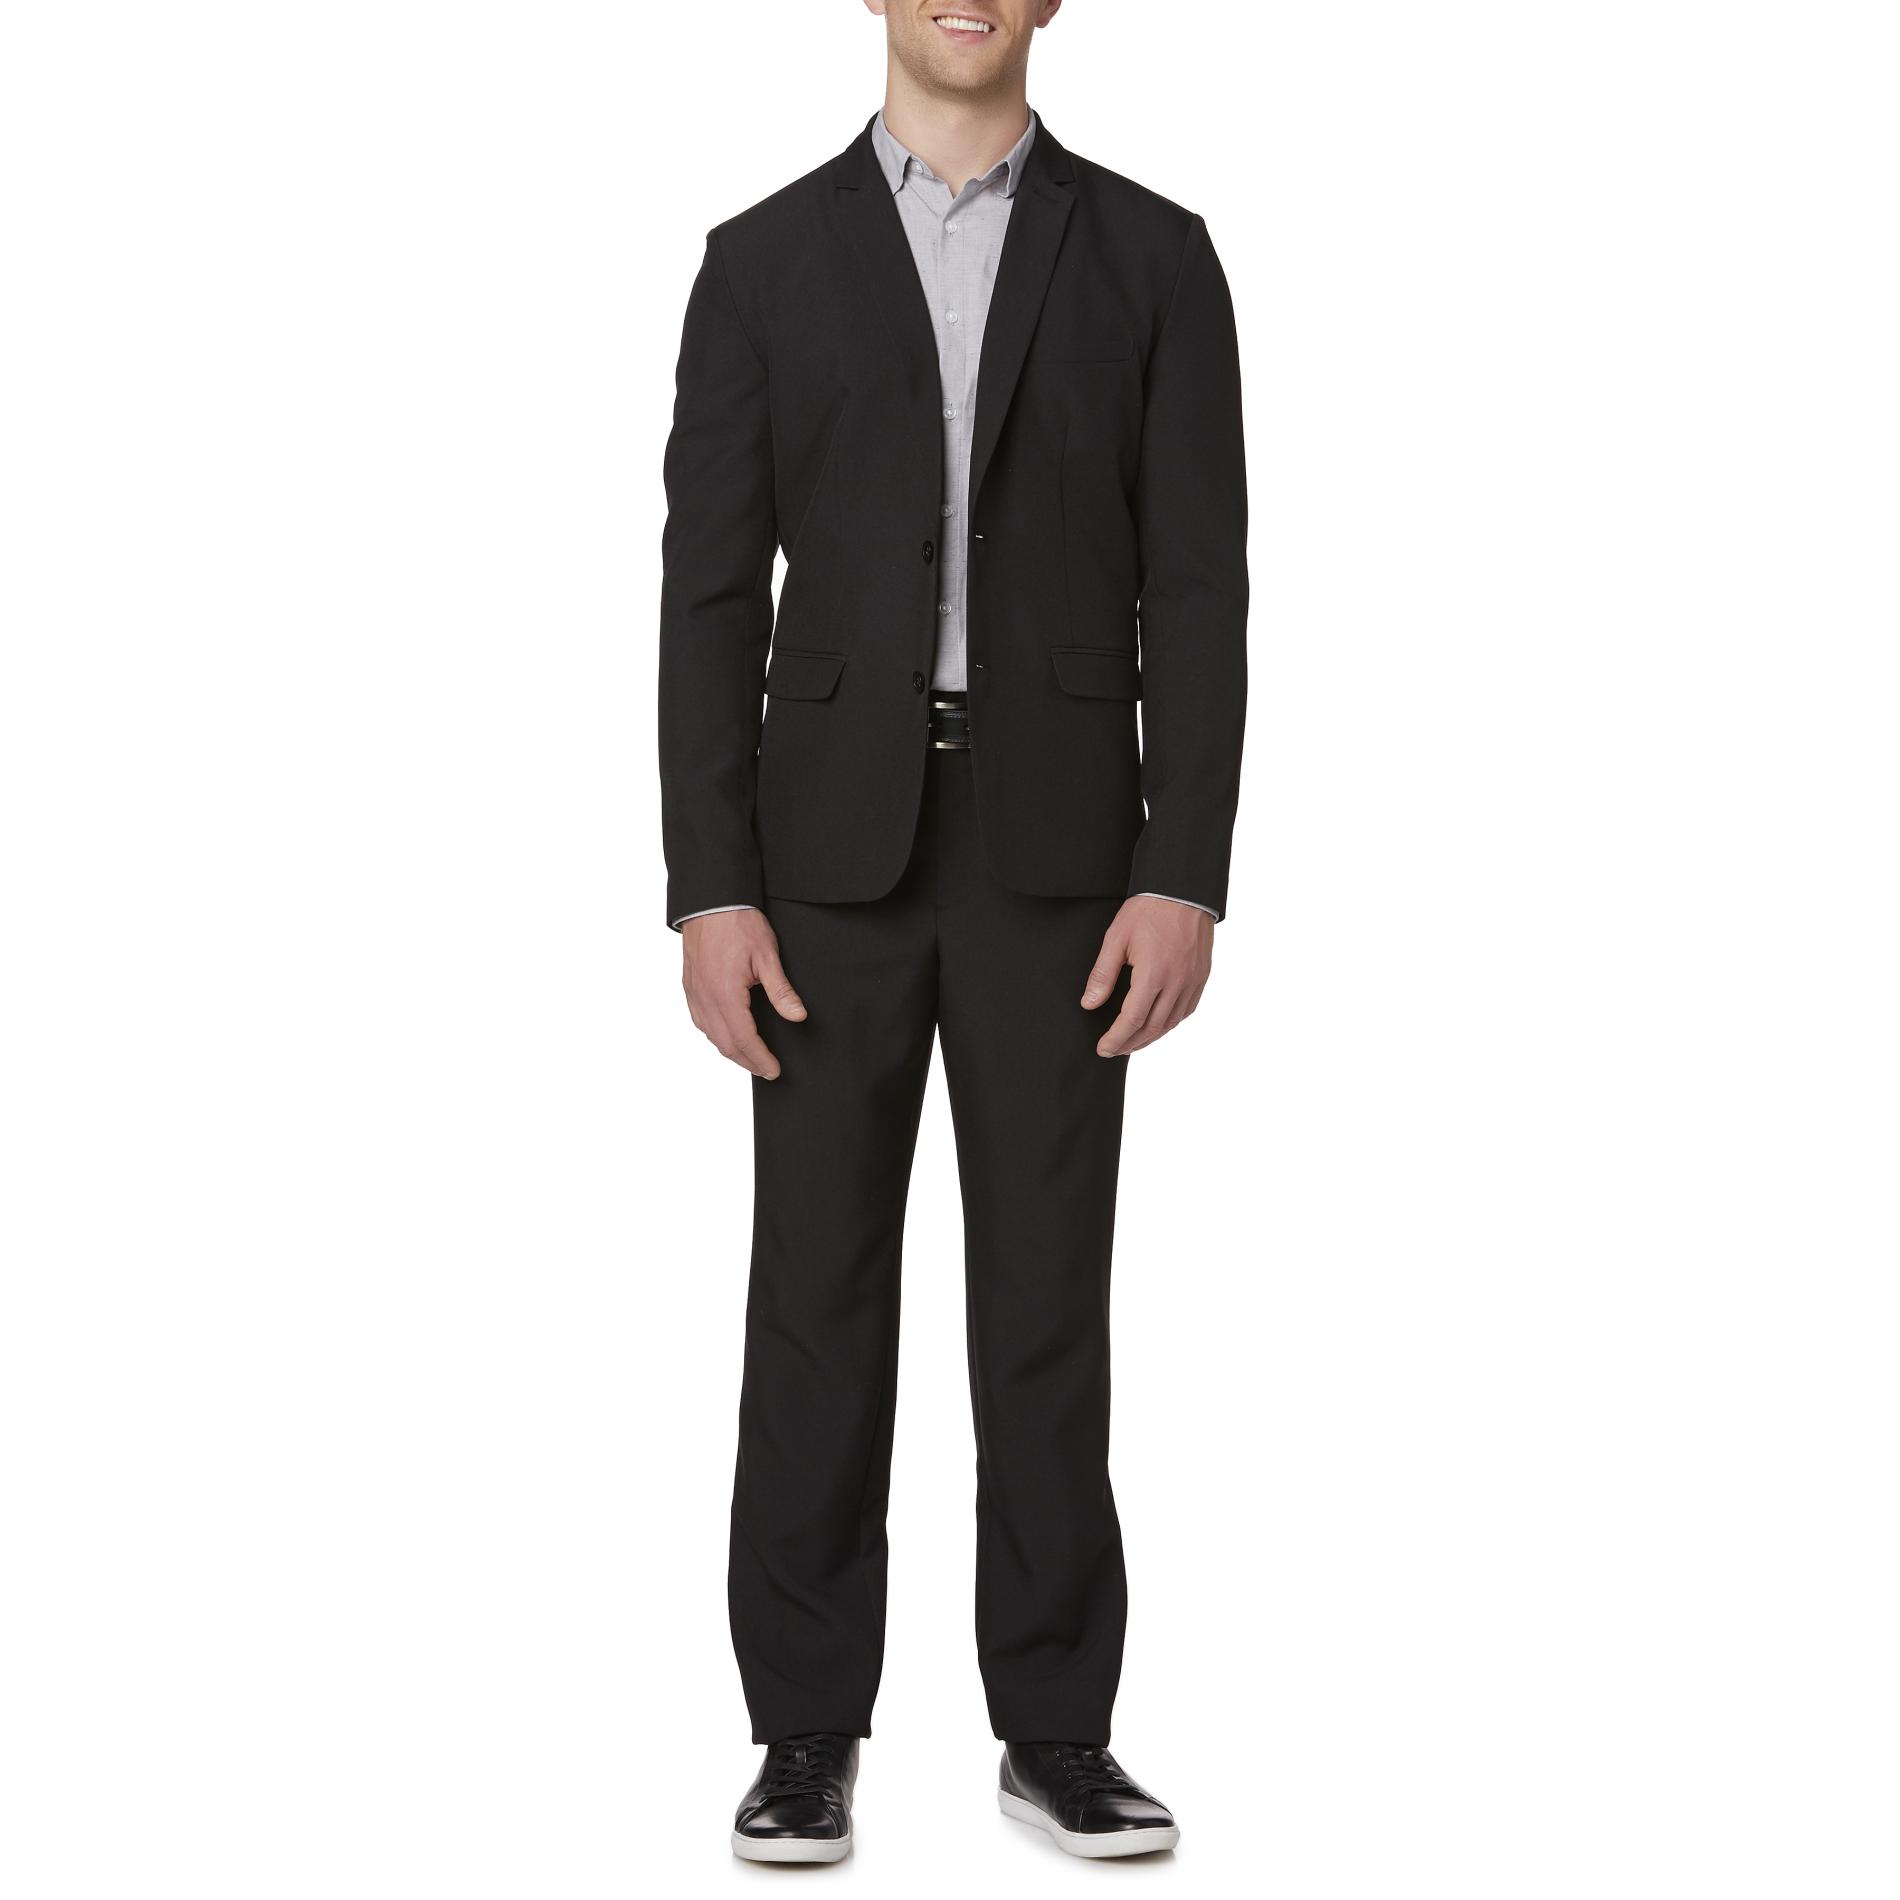 Basic Editions Men's Suit Jacket & Pants